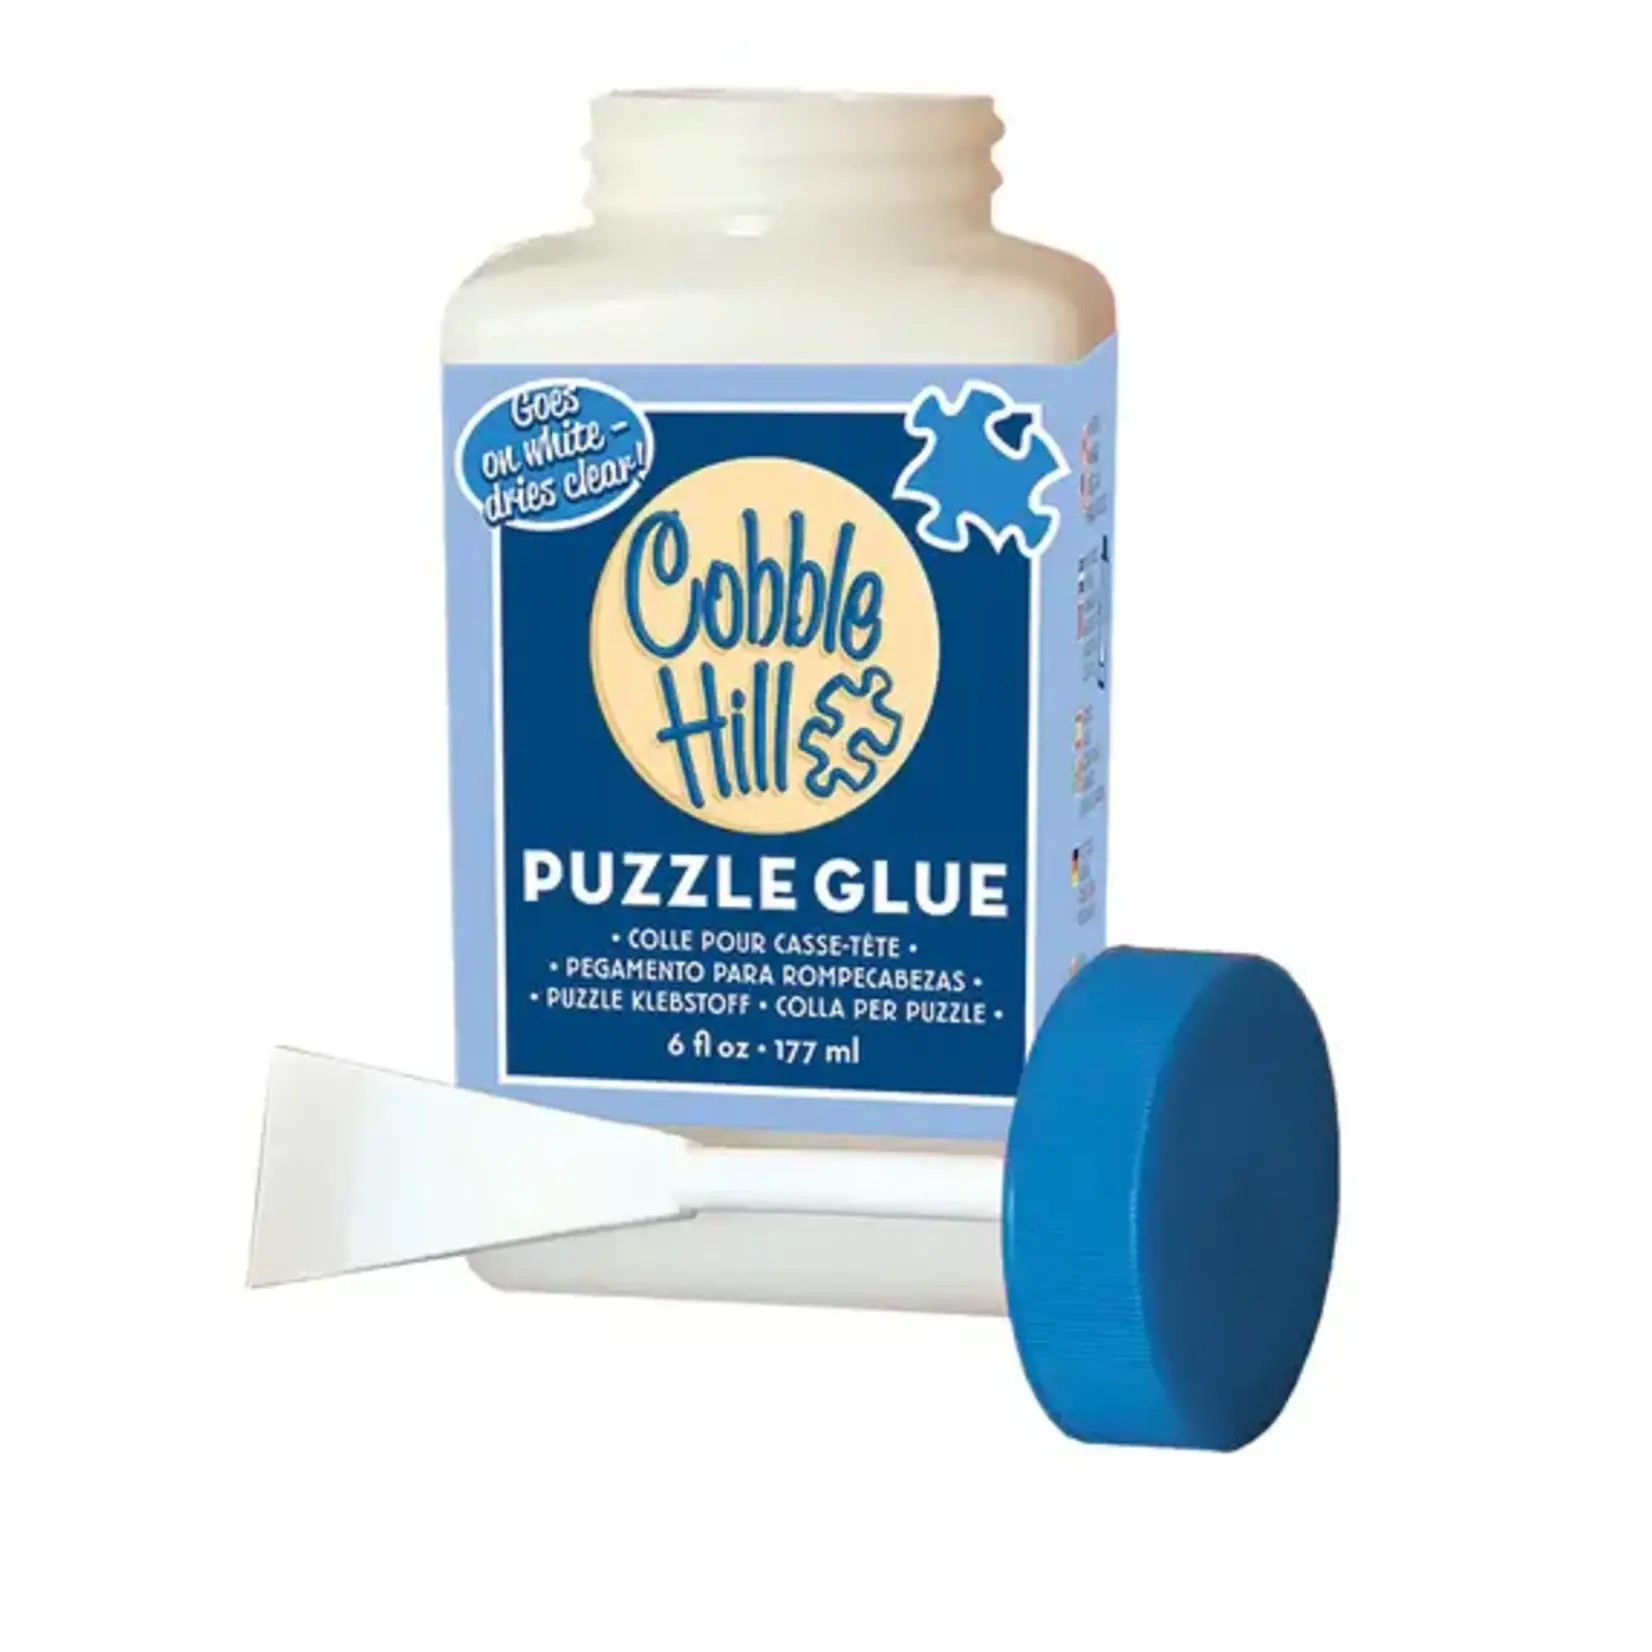 Cobble Hill: Puzzle Glue - Phoenix Fire Games